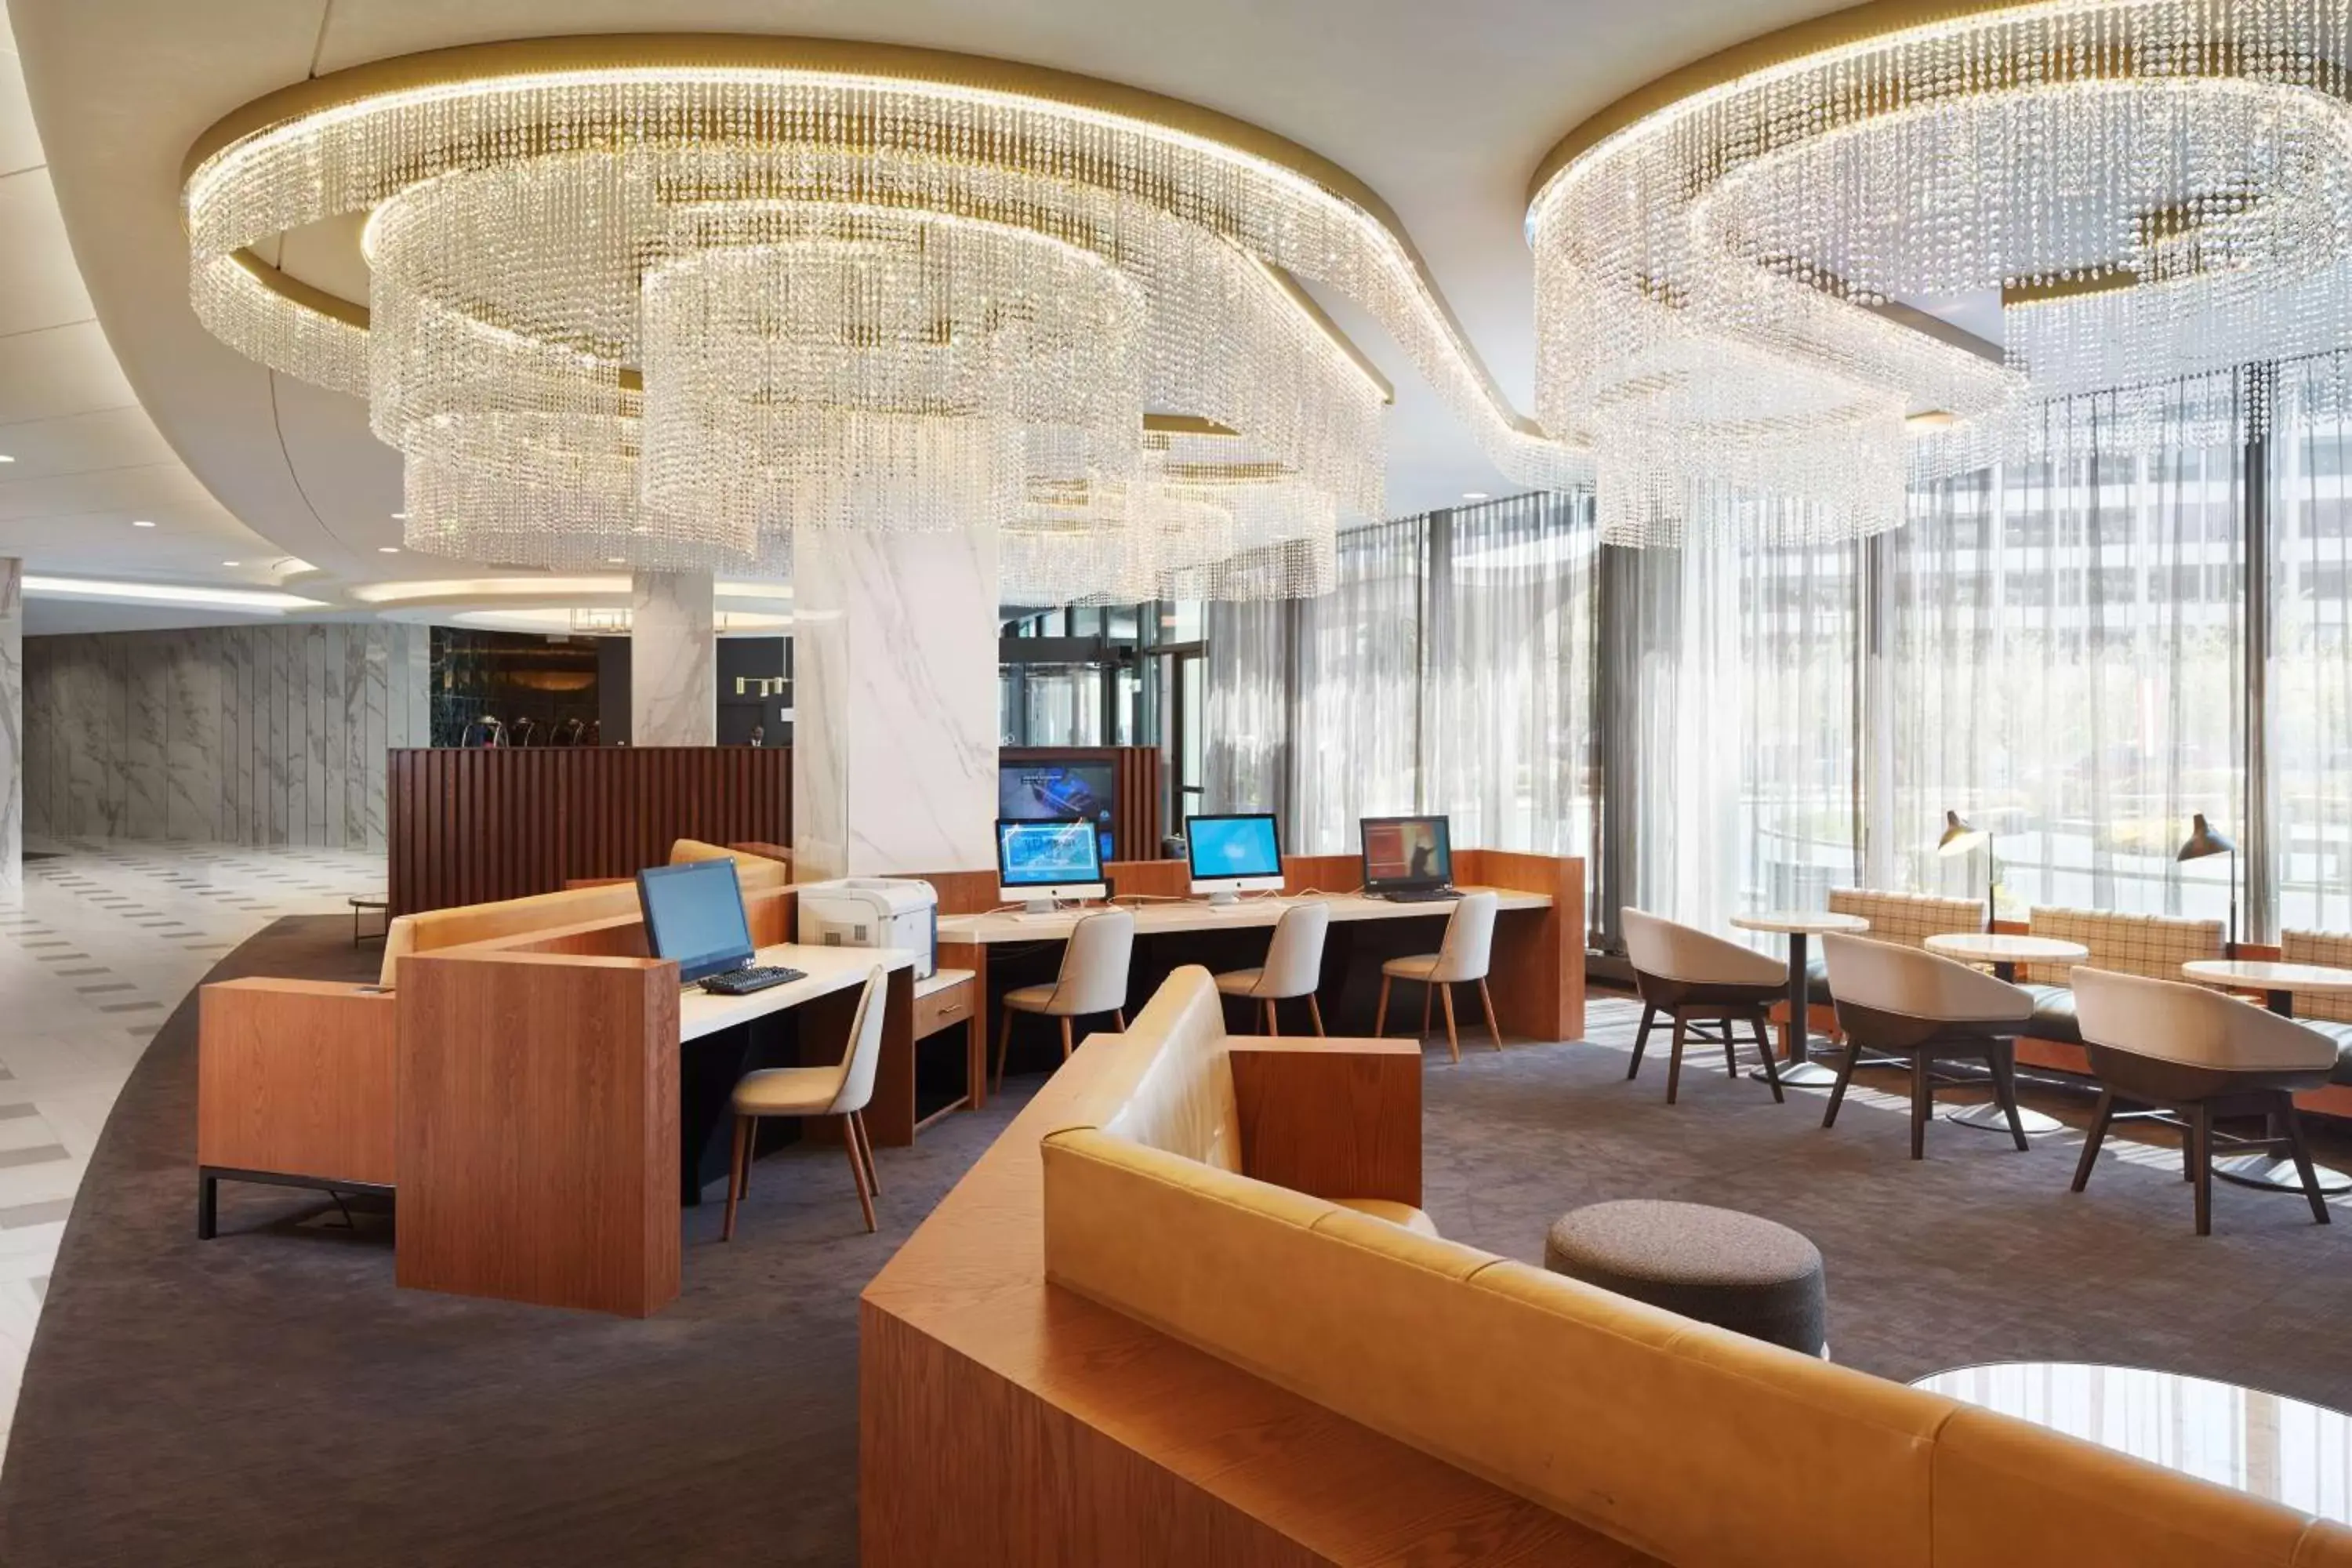 Lobby or reception in Washington Hilton